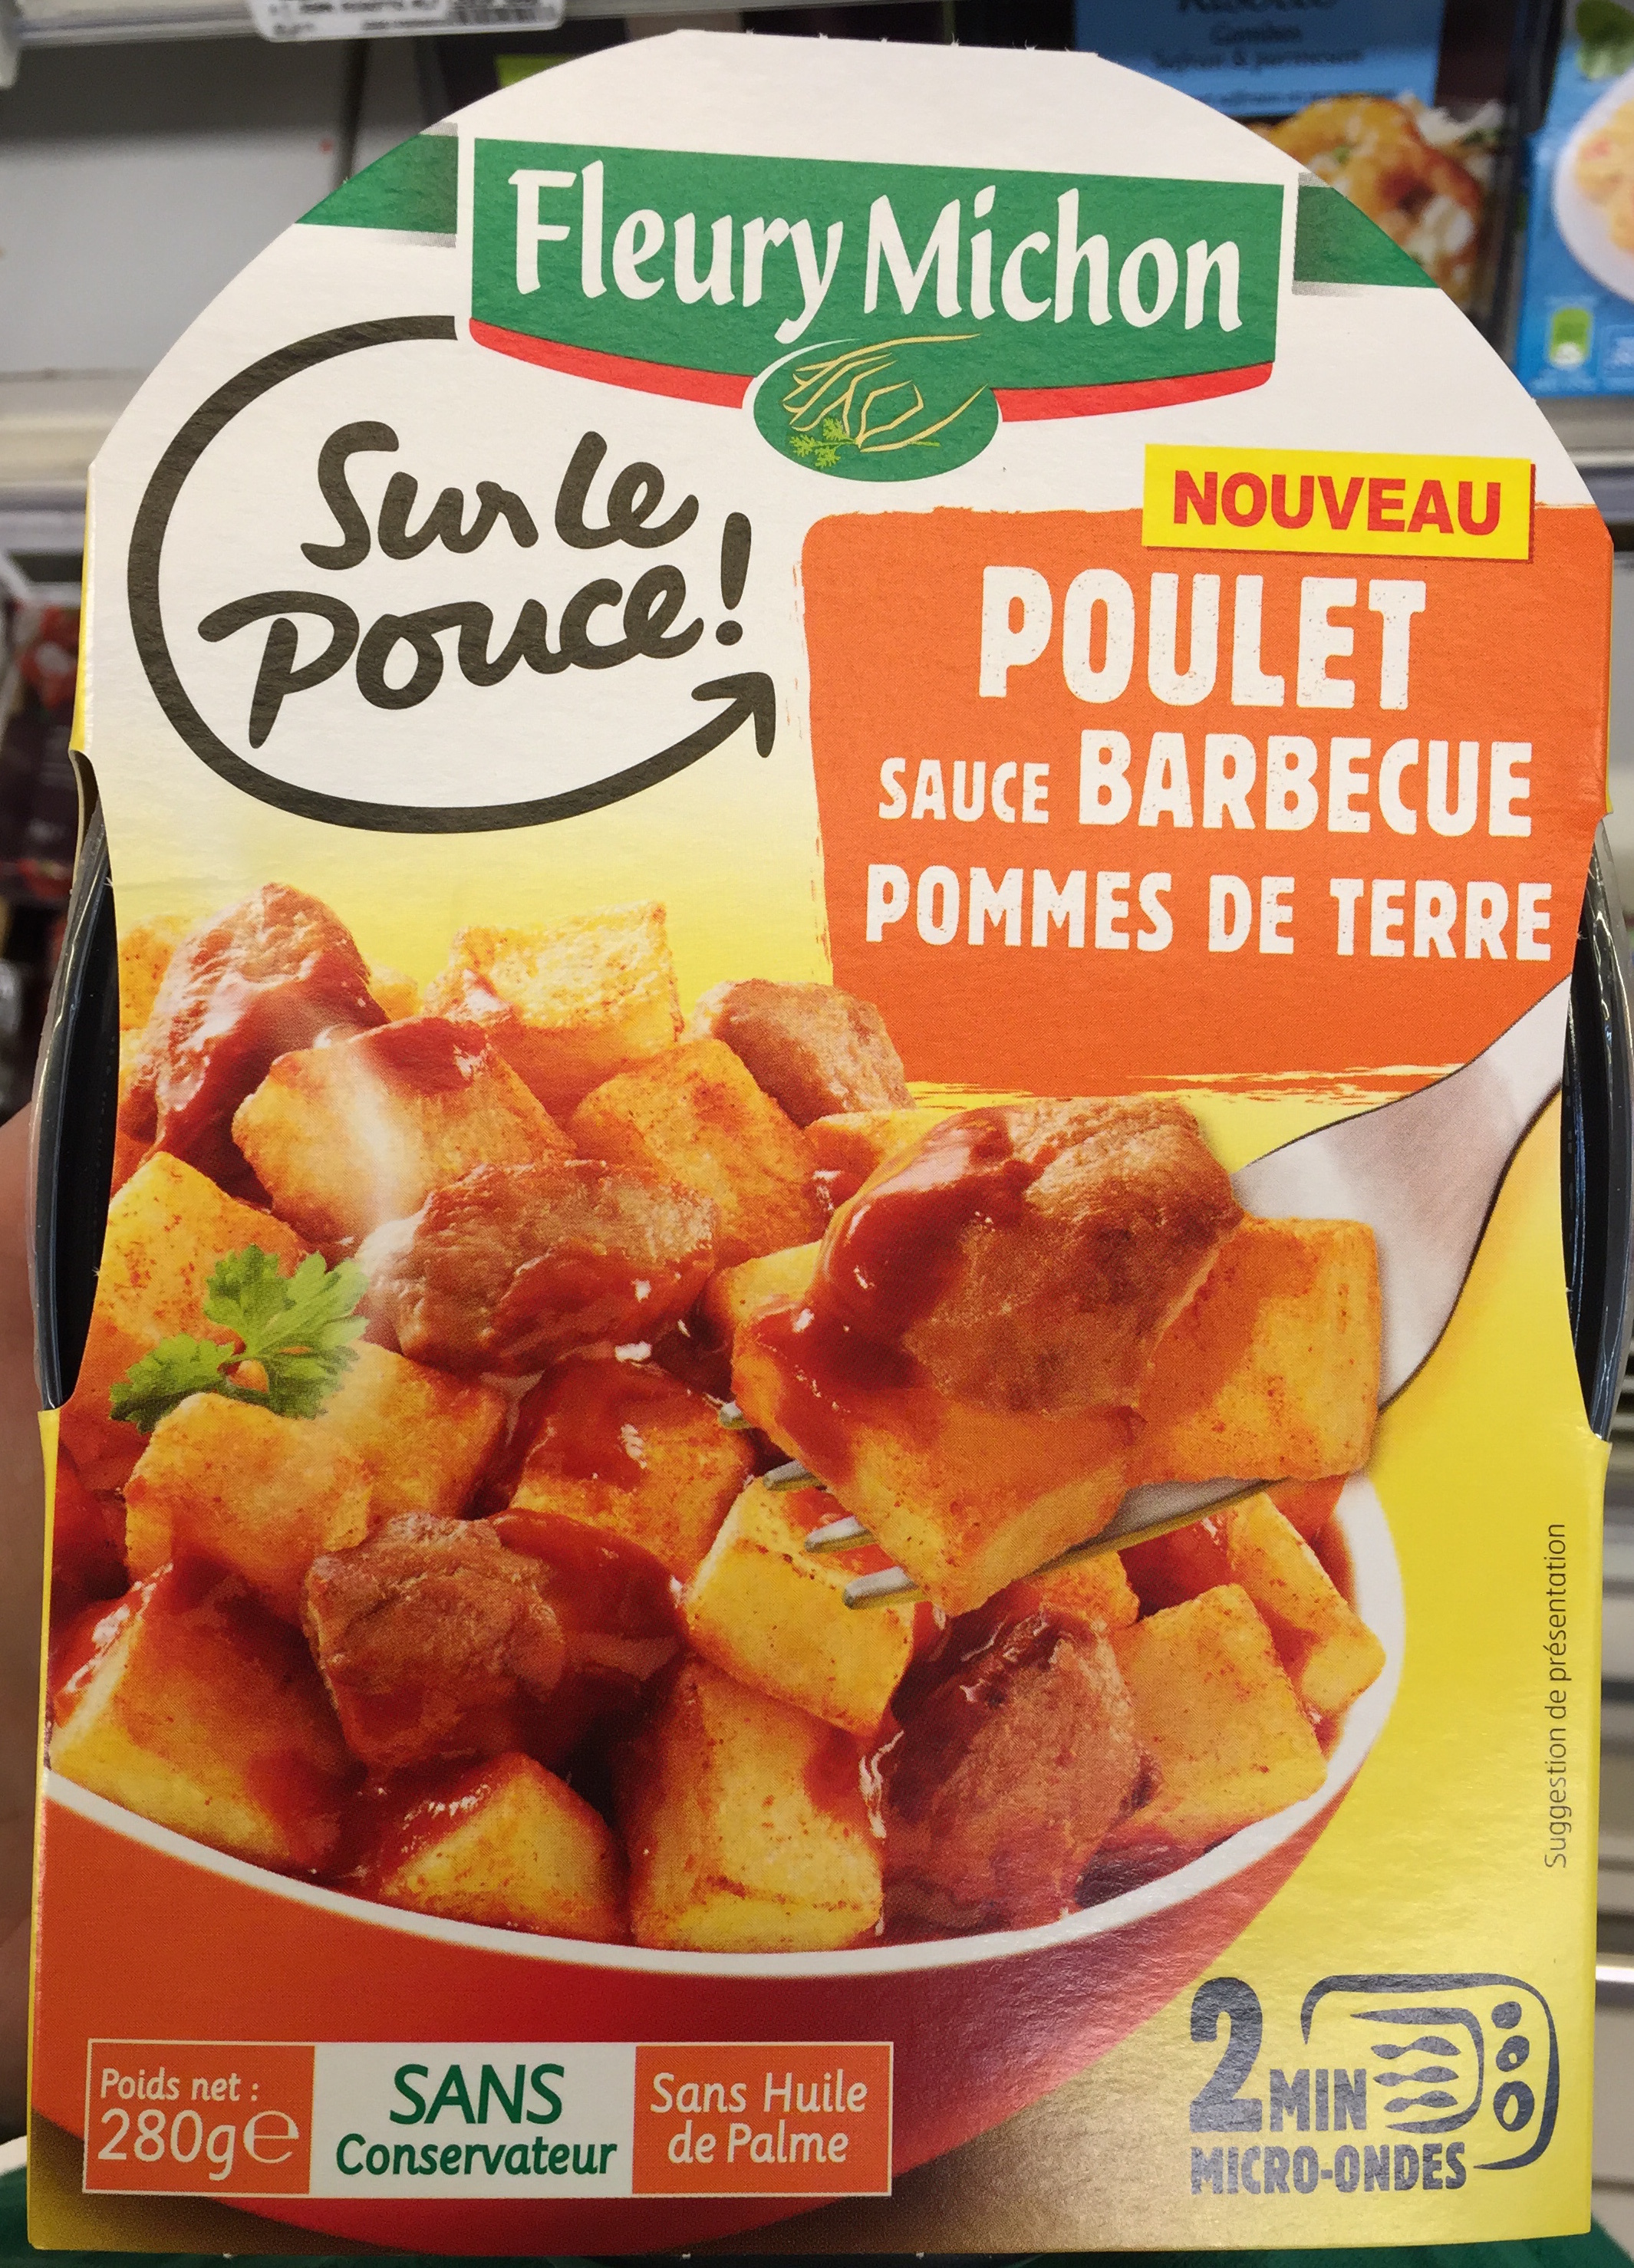 Sur le Pouce! Poulet sauce Barbecue Pommes de terre - Product - fr